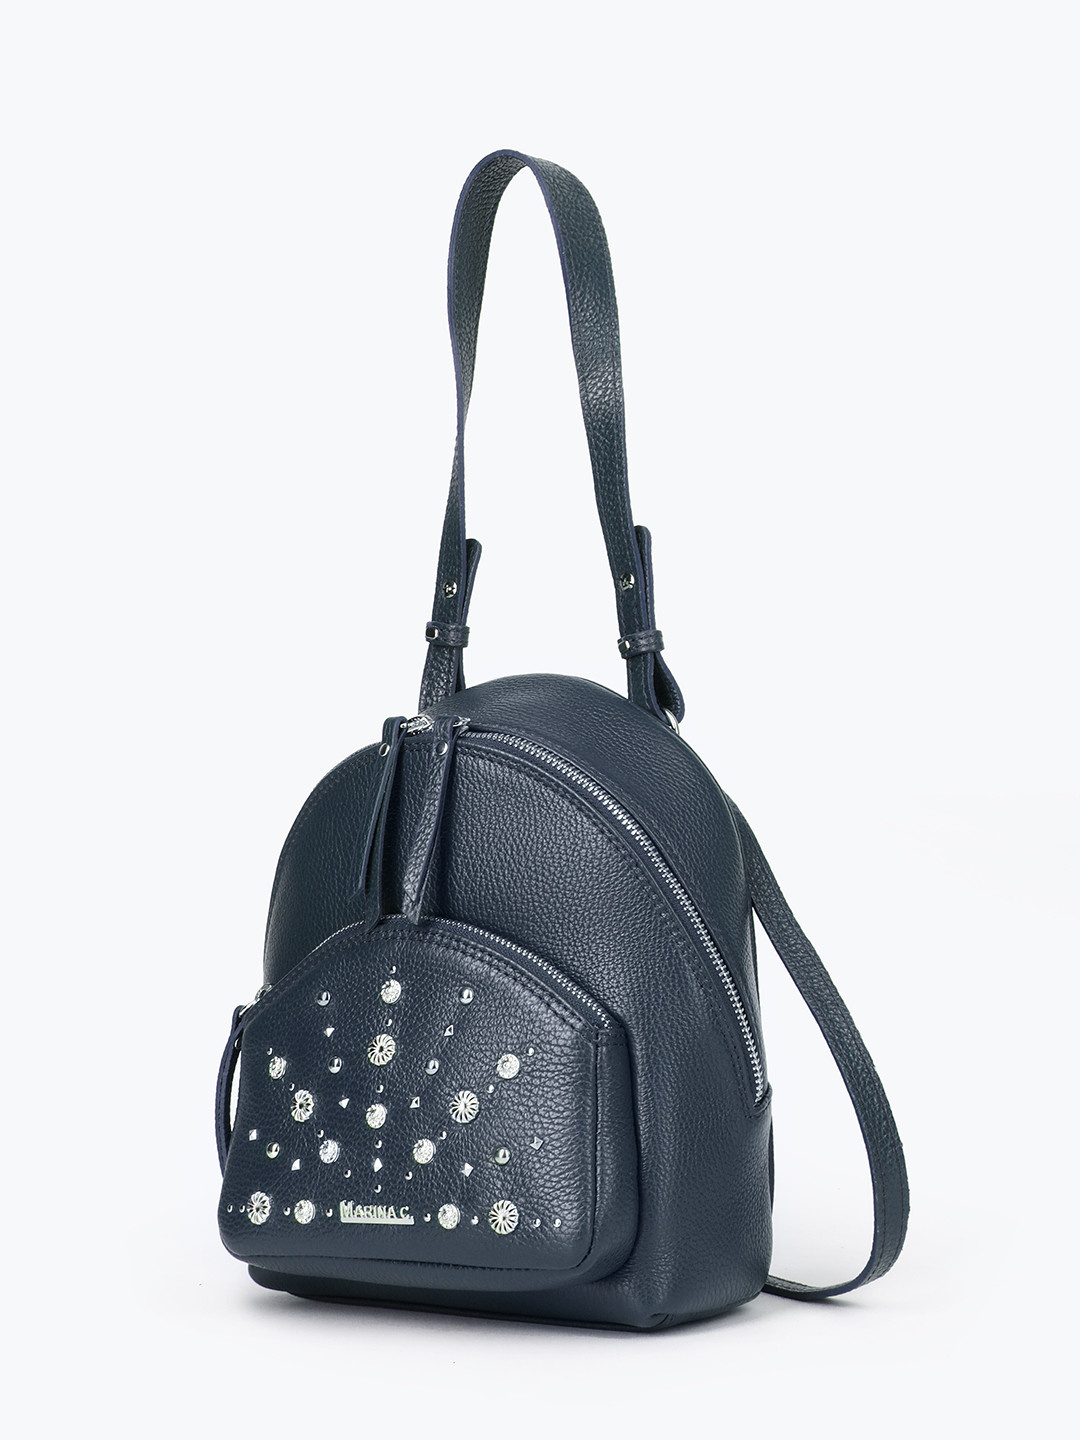 Фото Компактный рюкзак из мягкой кожи с декором из фигурных серебристых клепок Рюкзаки